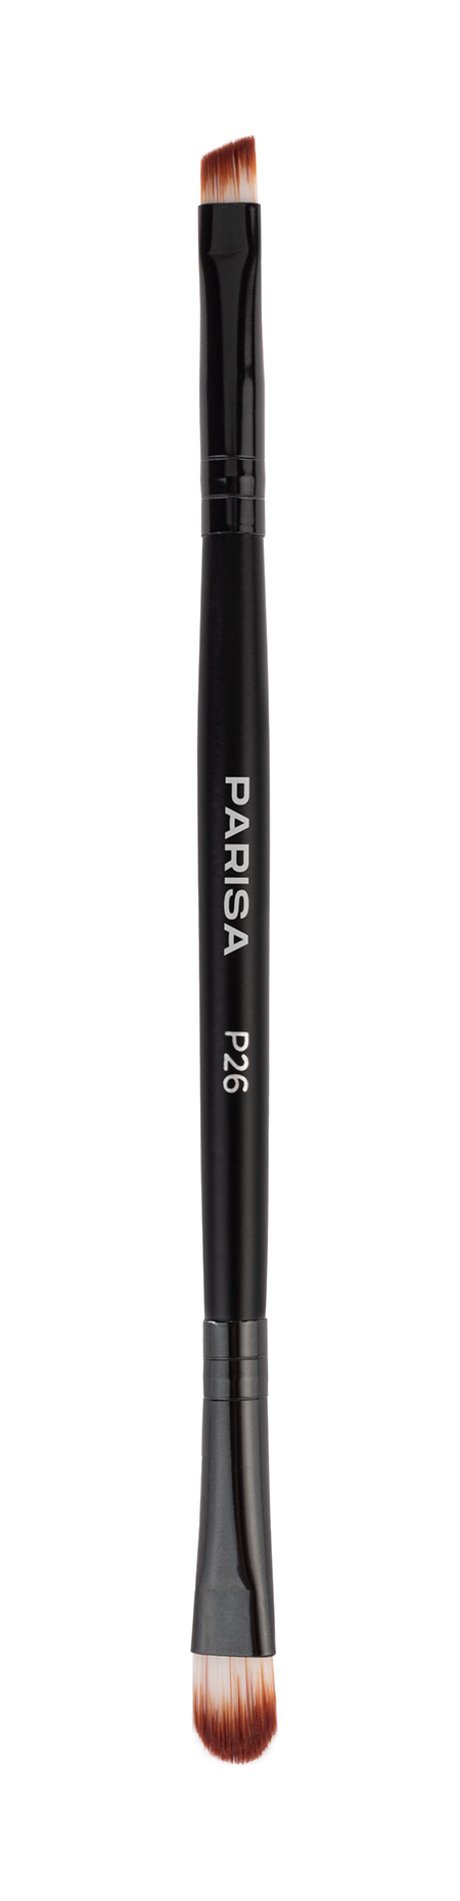 Parisa Cosmetics Eye & Brow Brush P26